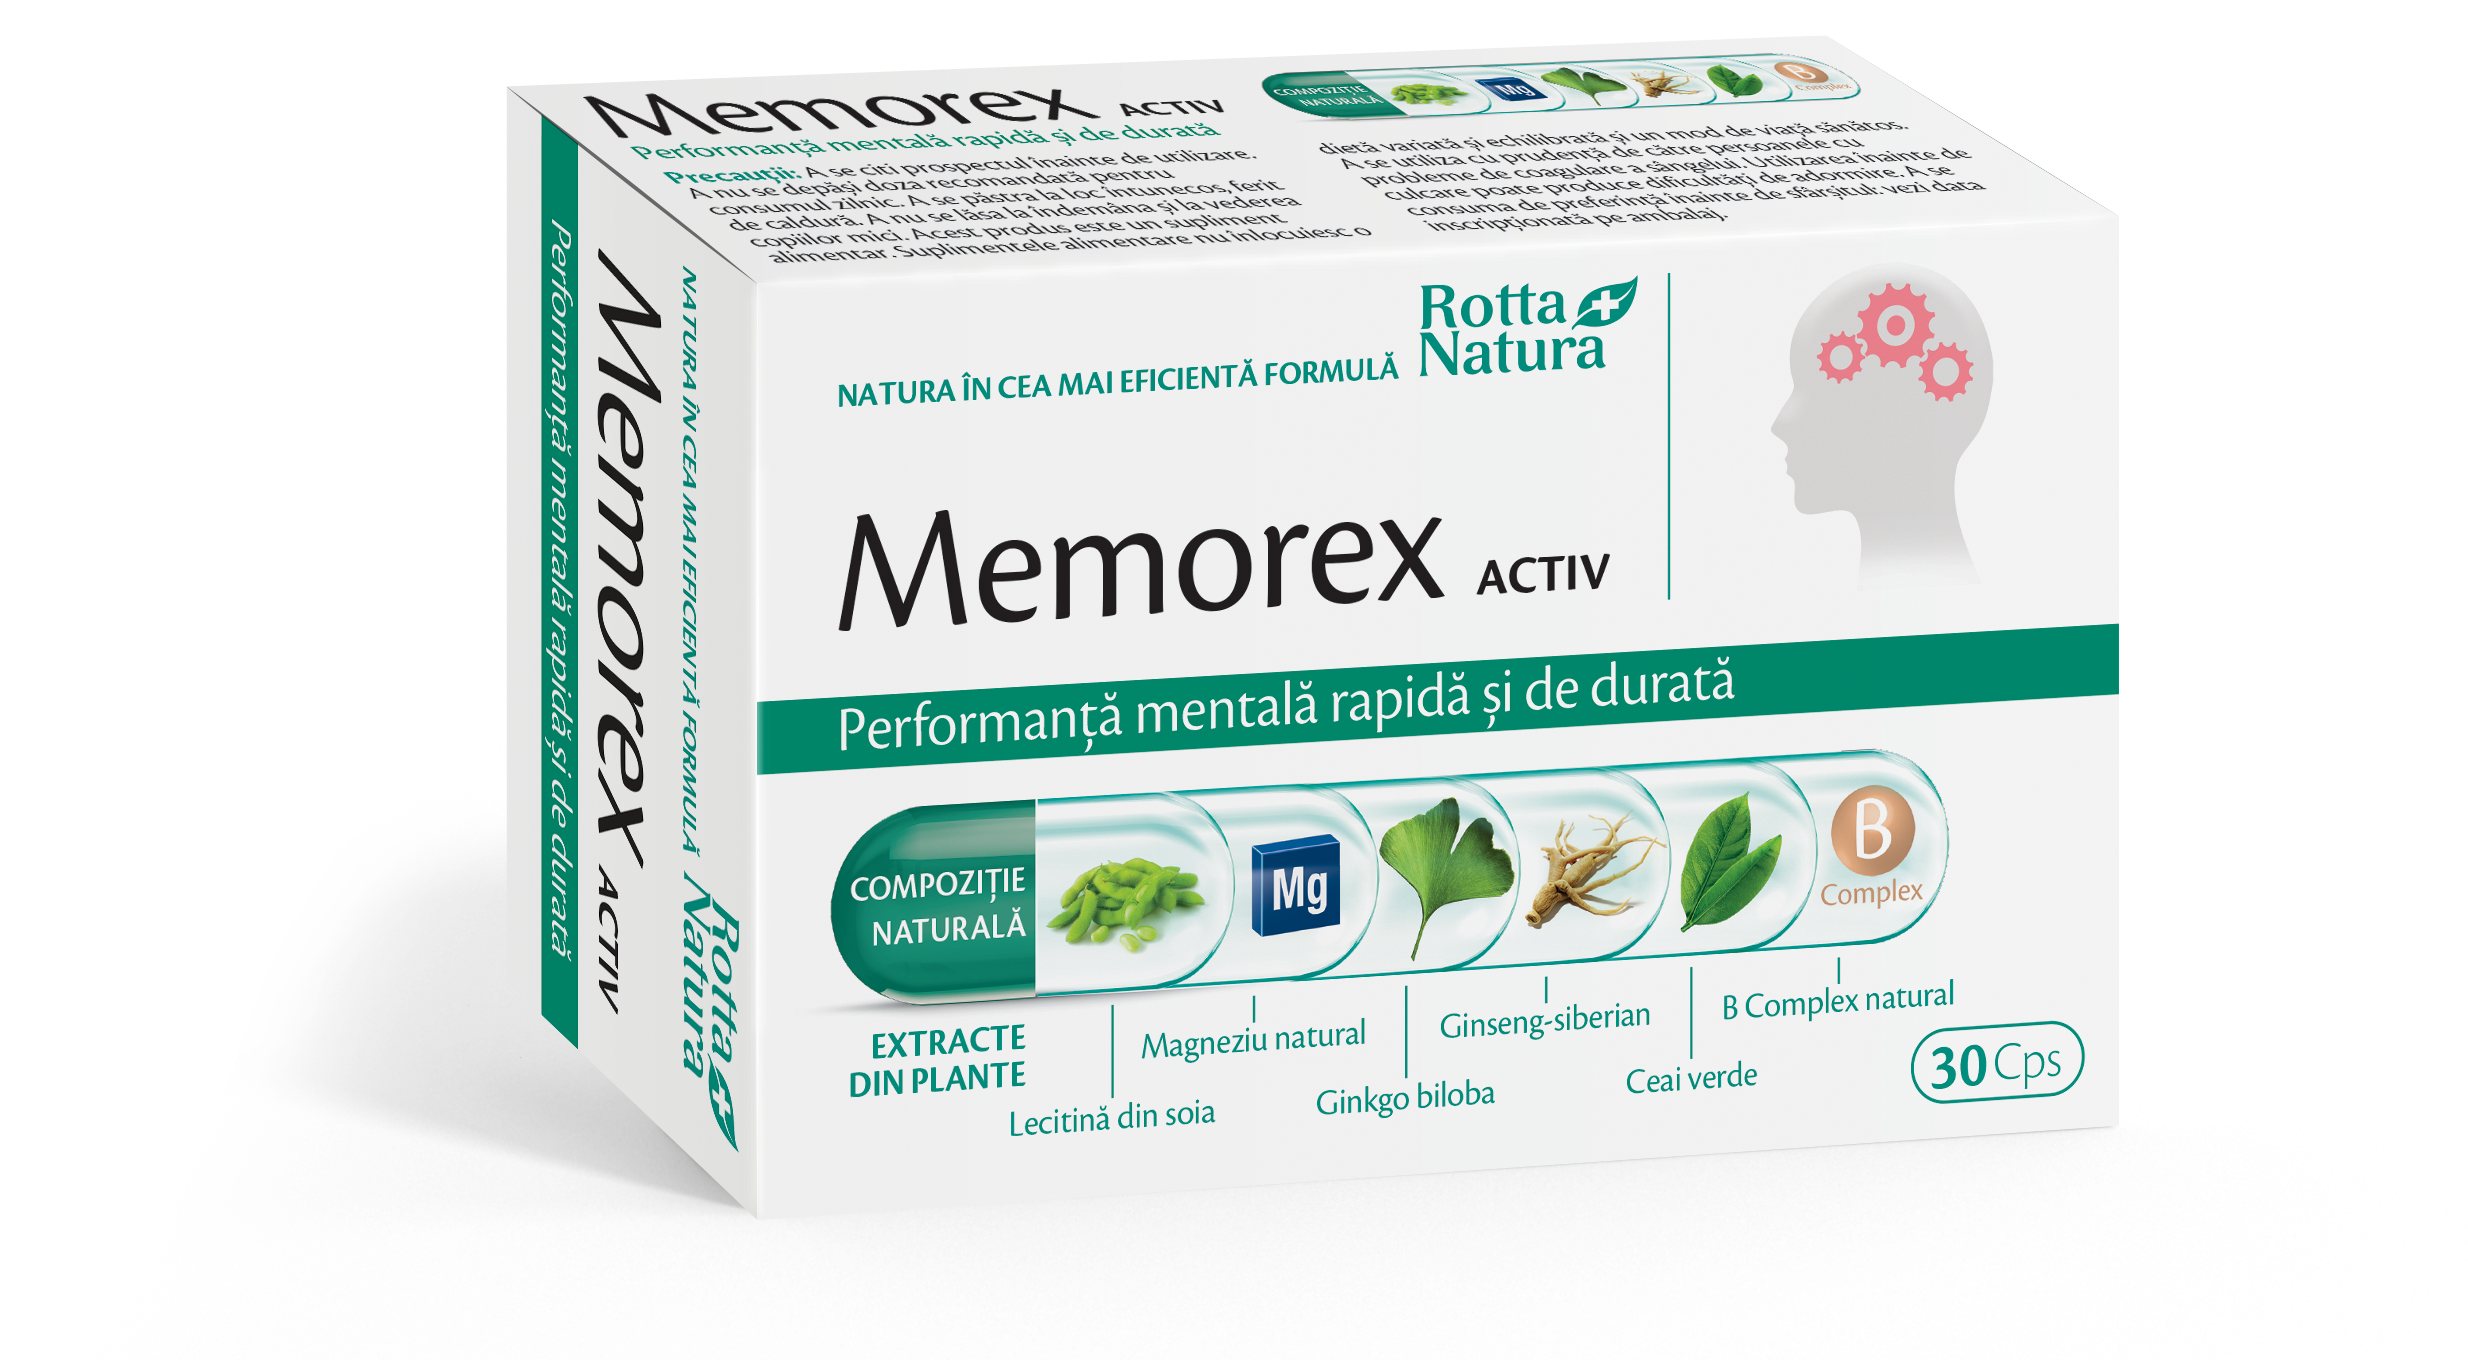 Circulatie cerebrala si memorie - Memorex activ, 30 capsule, Rotta Natura, sinapis.ro